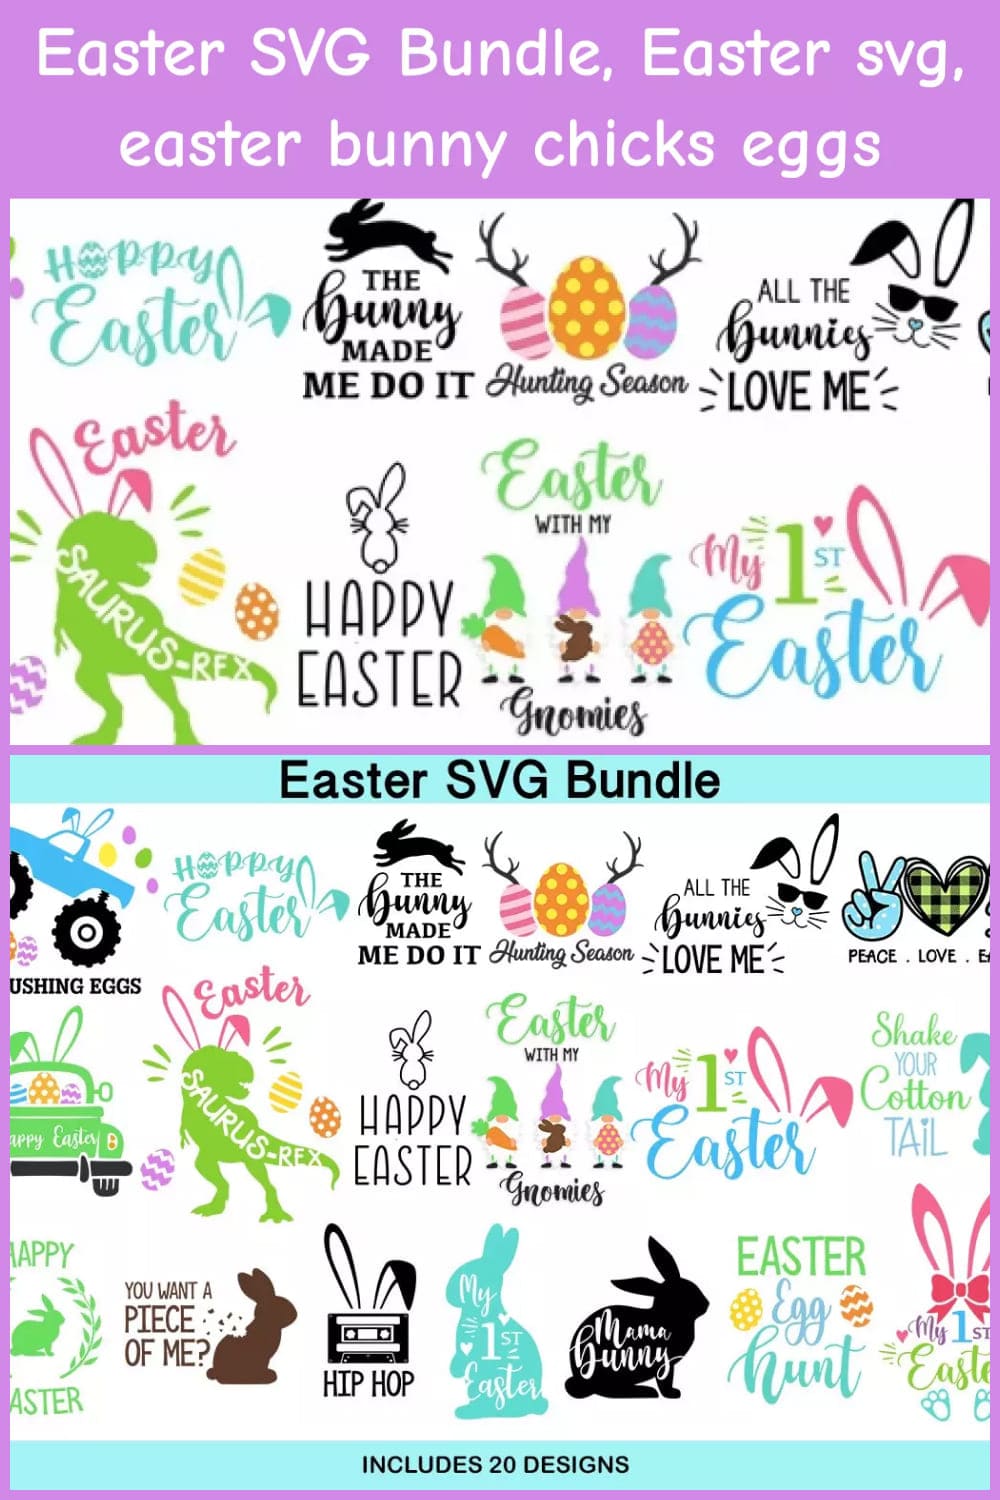 Easter SVG Bundle, Easter SVG, Easter Bunny Chicks Eggs.